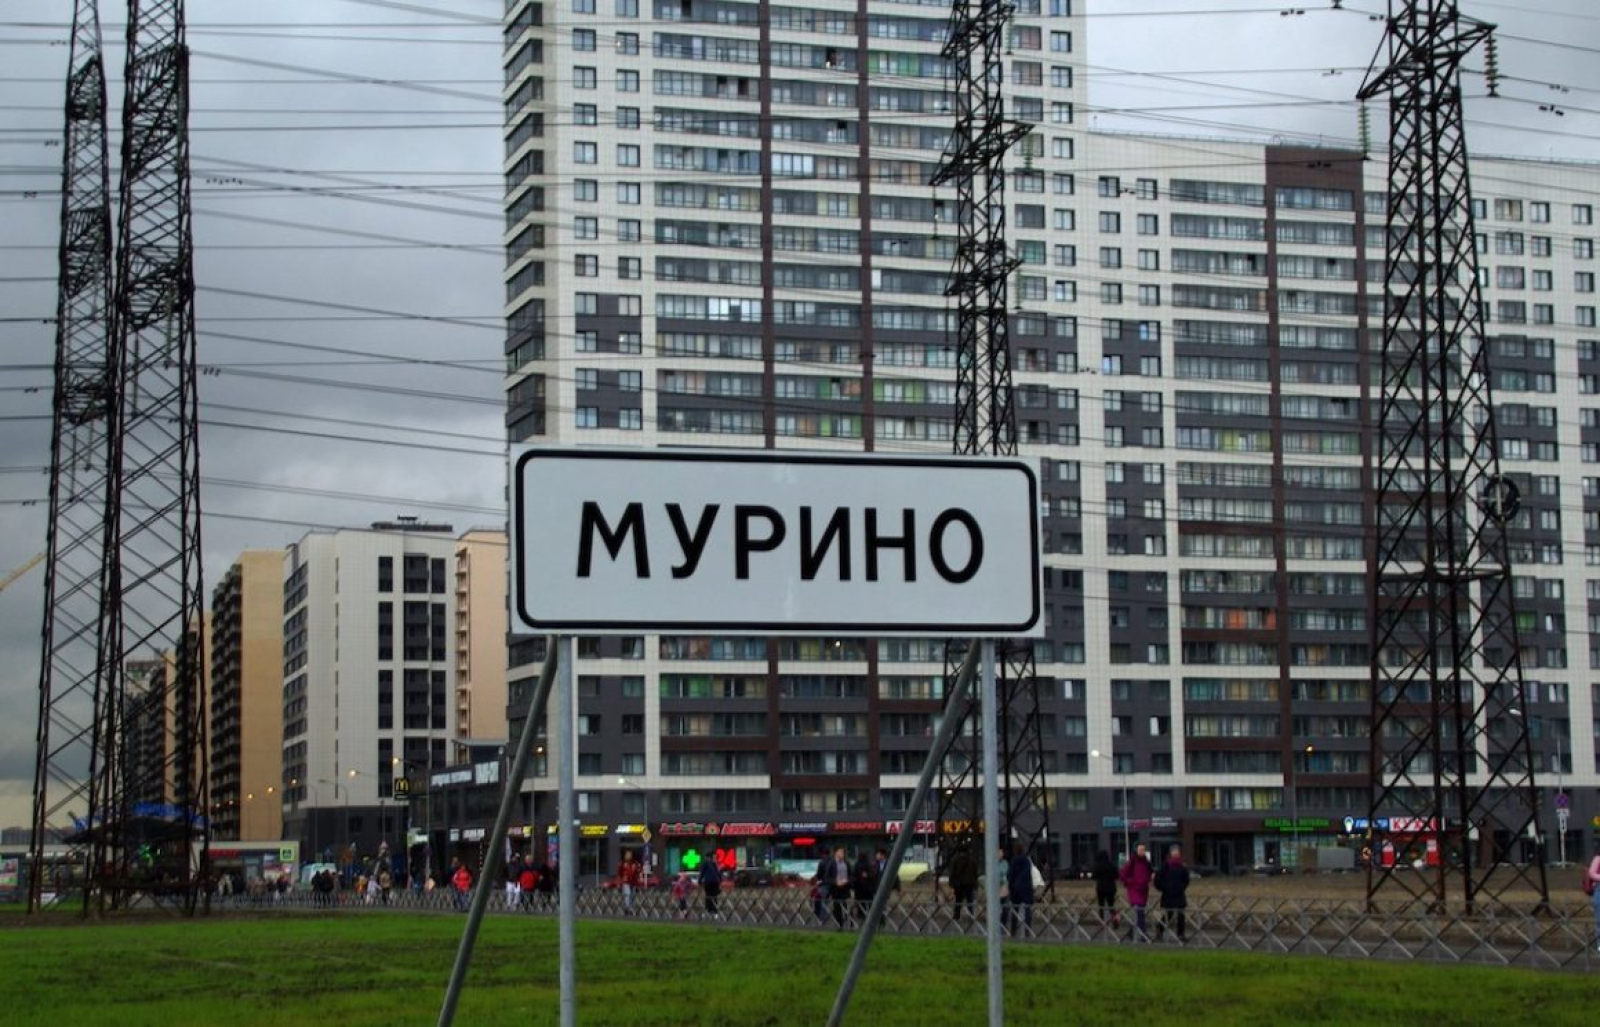 Мурино. Мурино Санкт-Петербург. Мурино Санкт-Петербург человейники. Мурино застройка. Мурино в 2010.